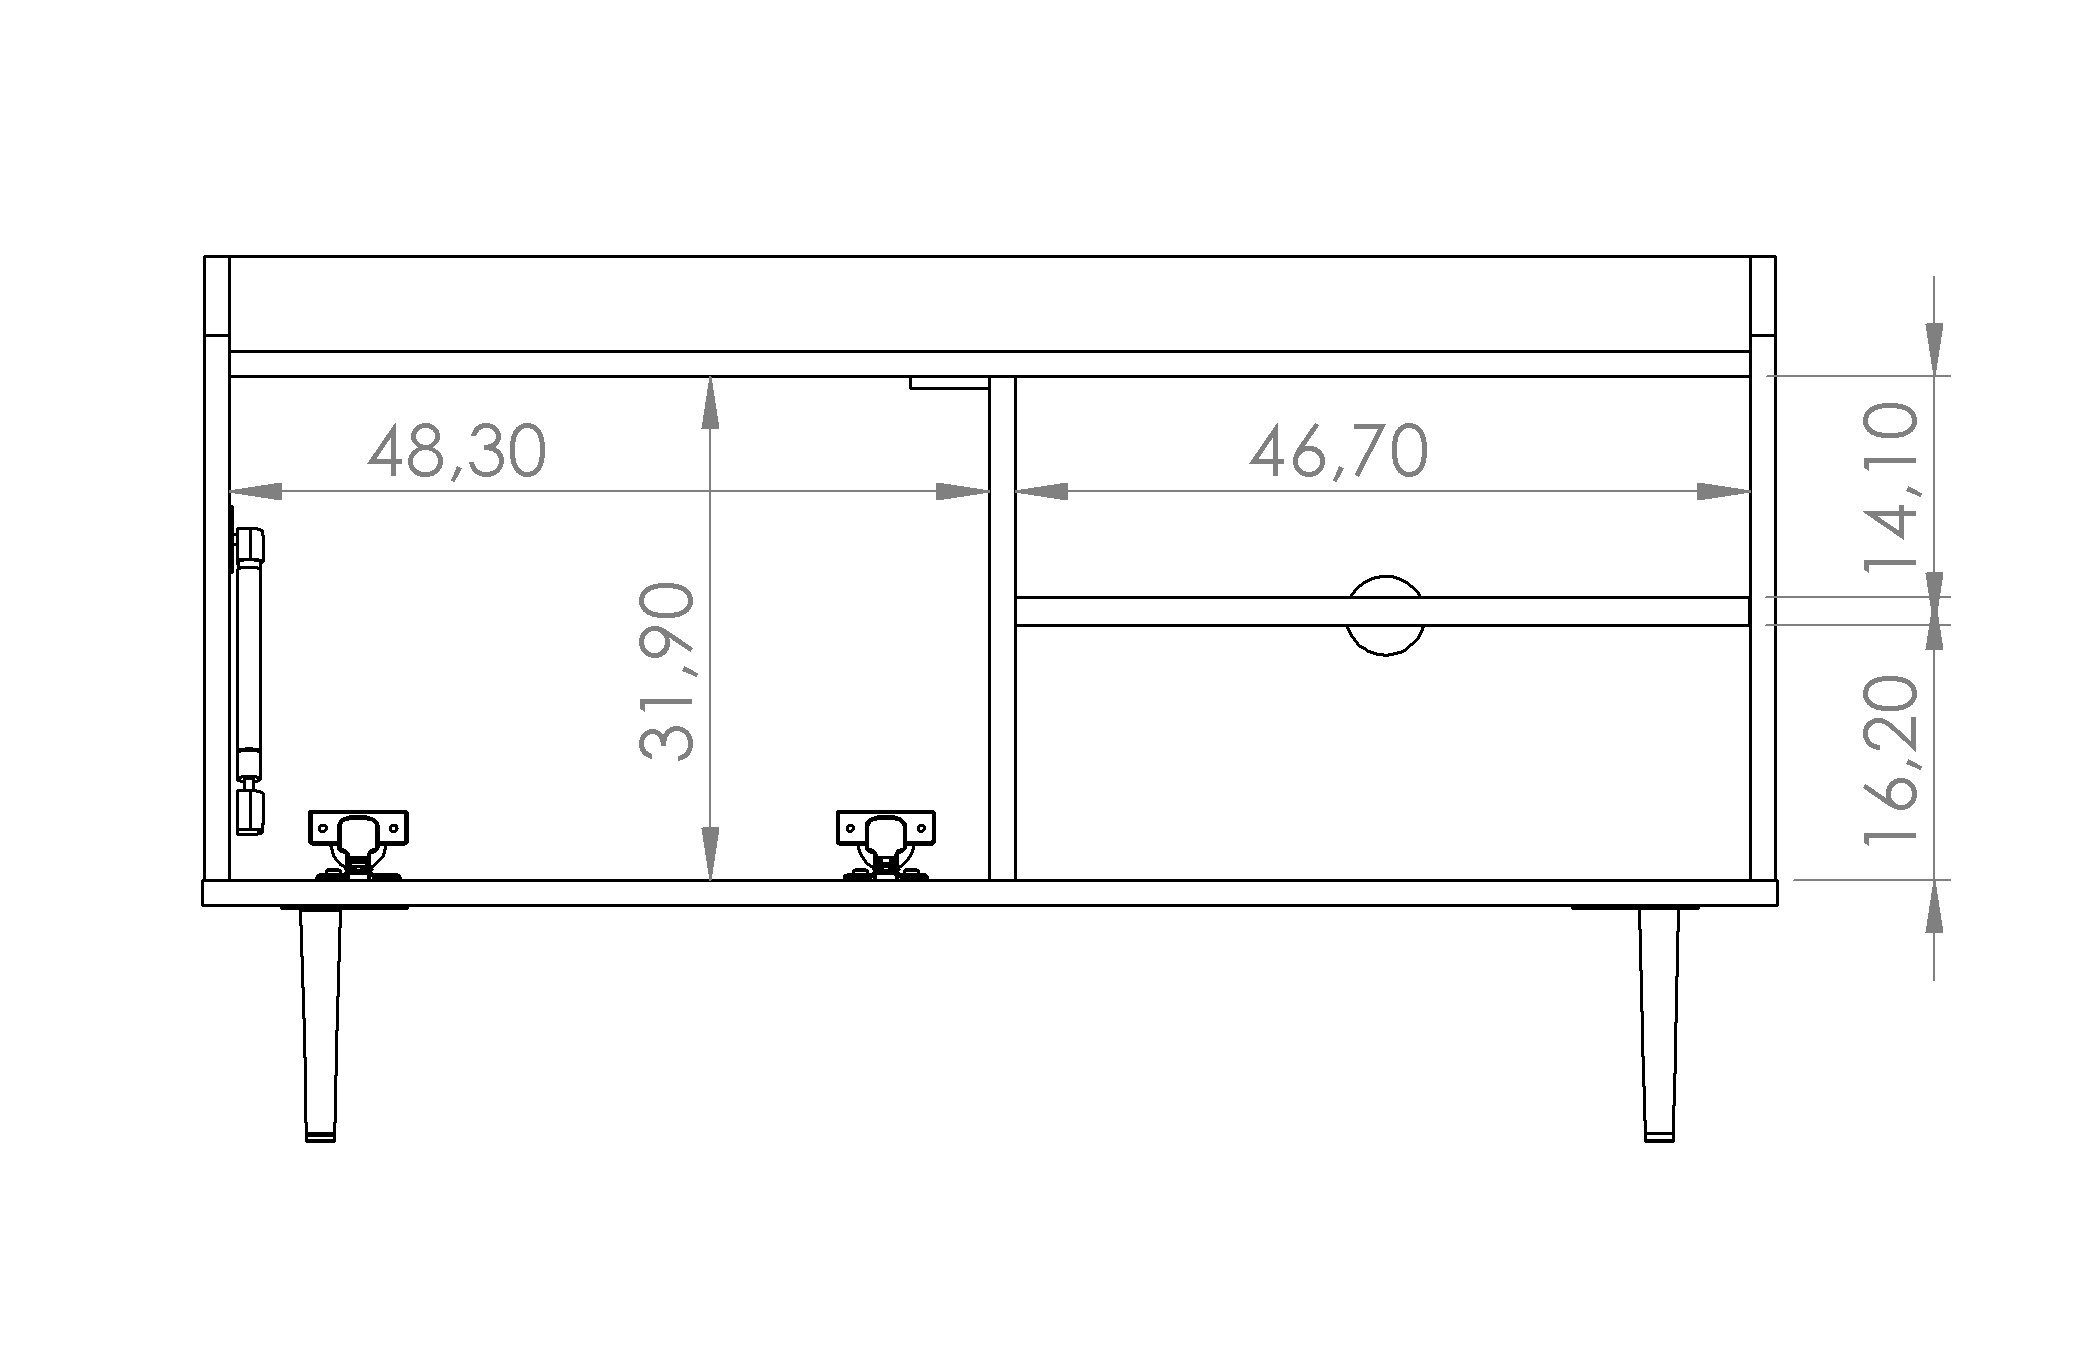 B100 T40 cm, Fächer Sideboard x VASINIE Klapptür Soft Furnix H56,2 Scharniere in Brandy-Castello-Holz Close & x offene TV-Schrank